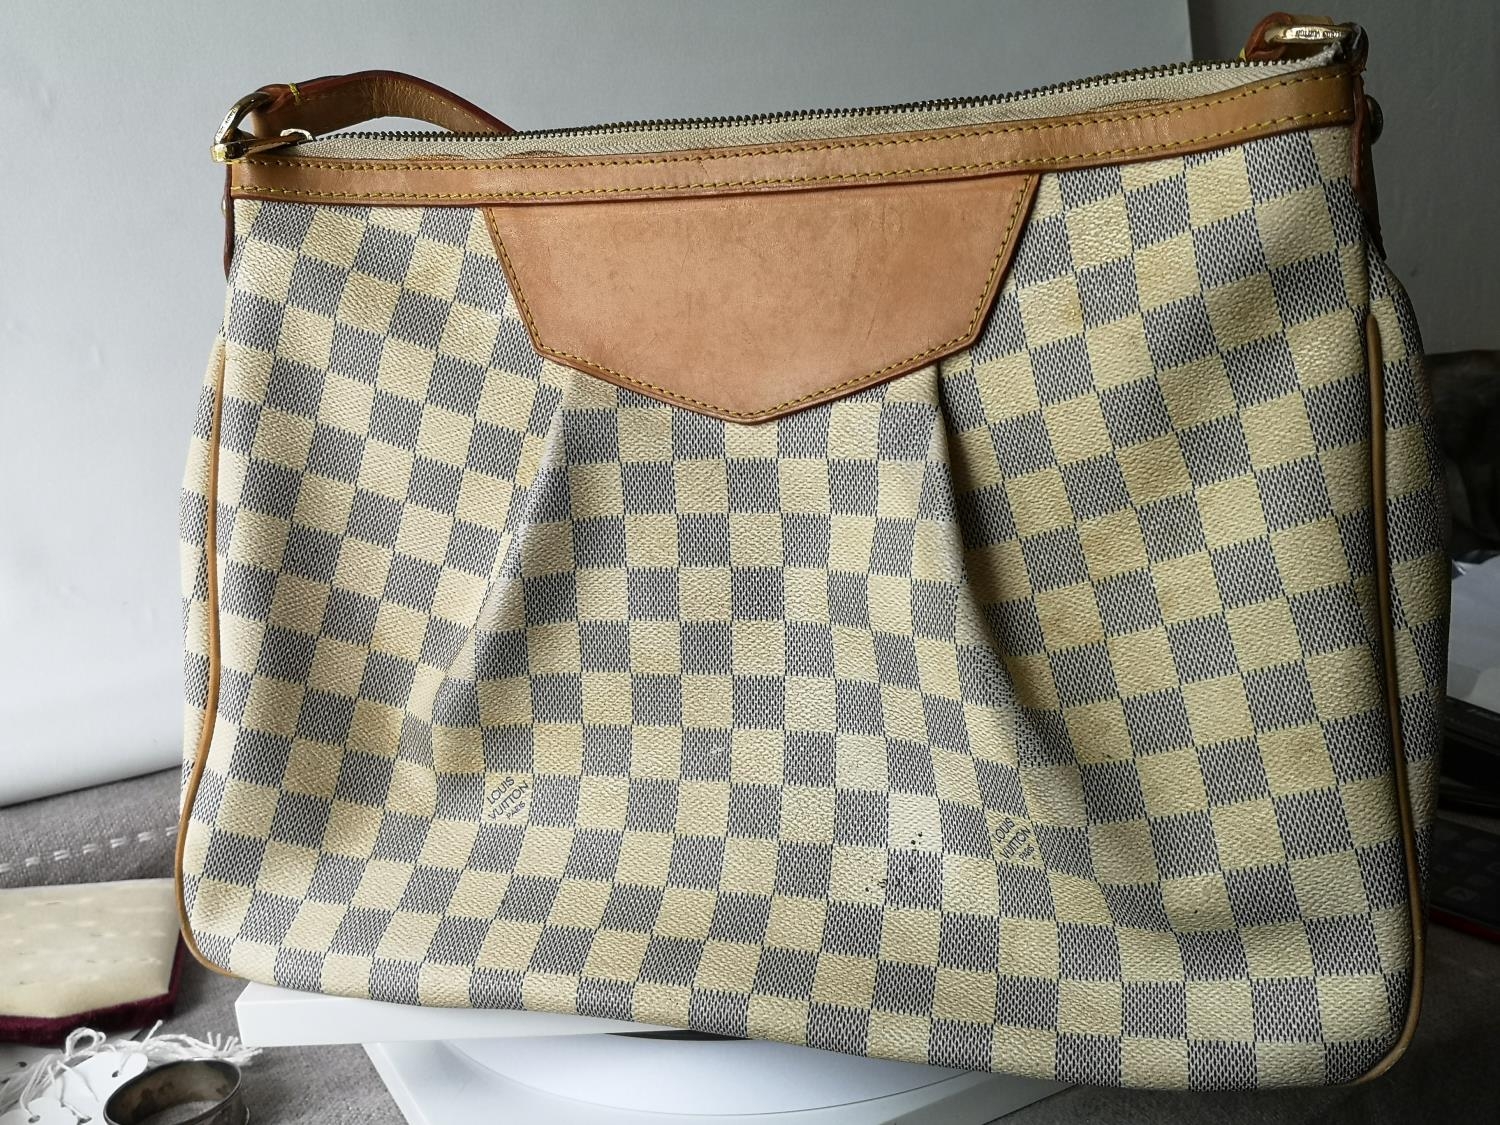 A Louis Vuitton Damier shoulder bag - Image 3 of 6